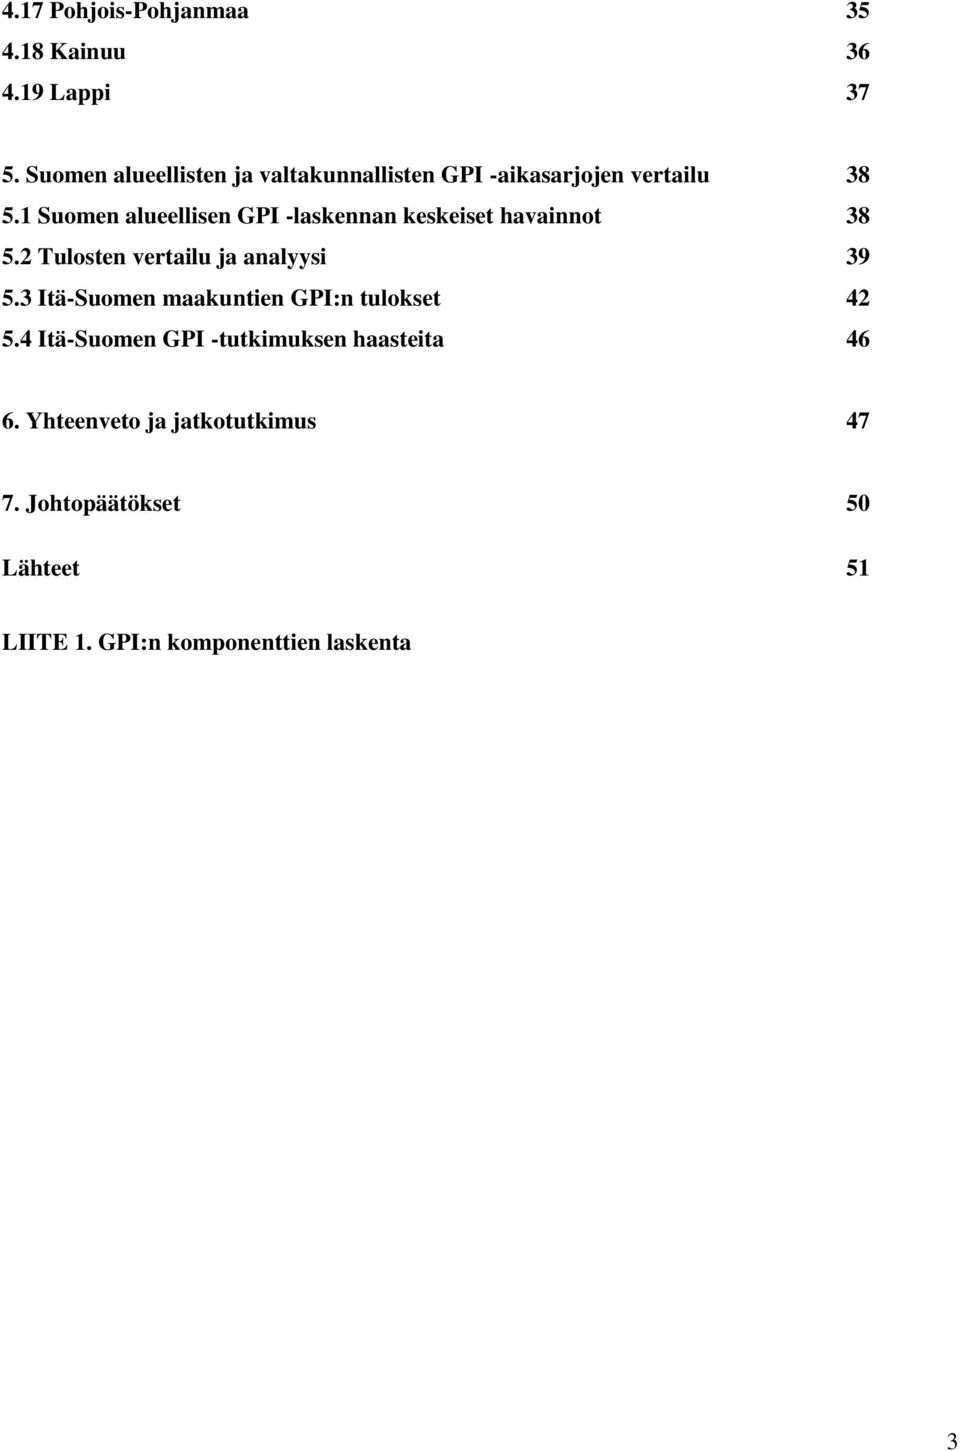 1 Suomen alueellisen GPI -laskennan keskeiset havainnot 38.2 Tulosten vertailu ja analyysi 39.